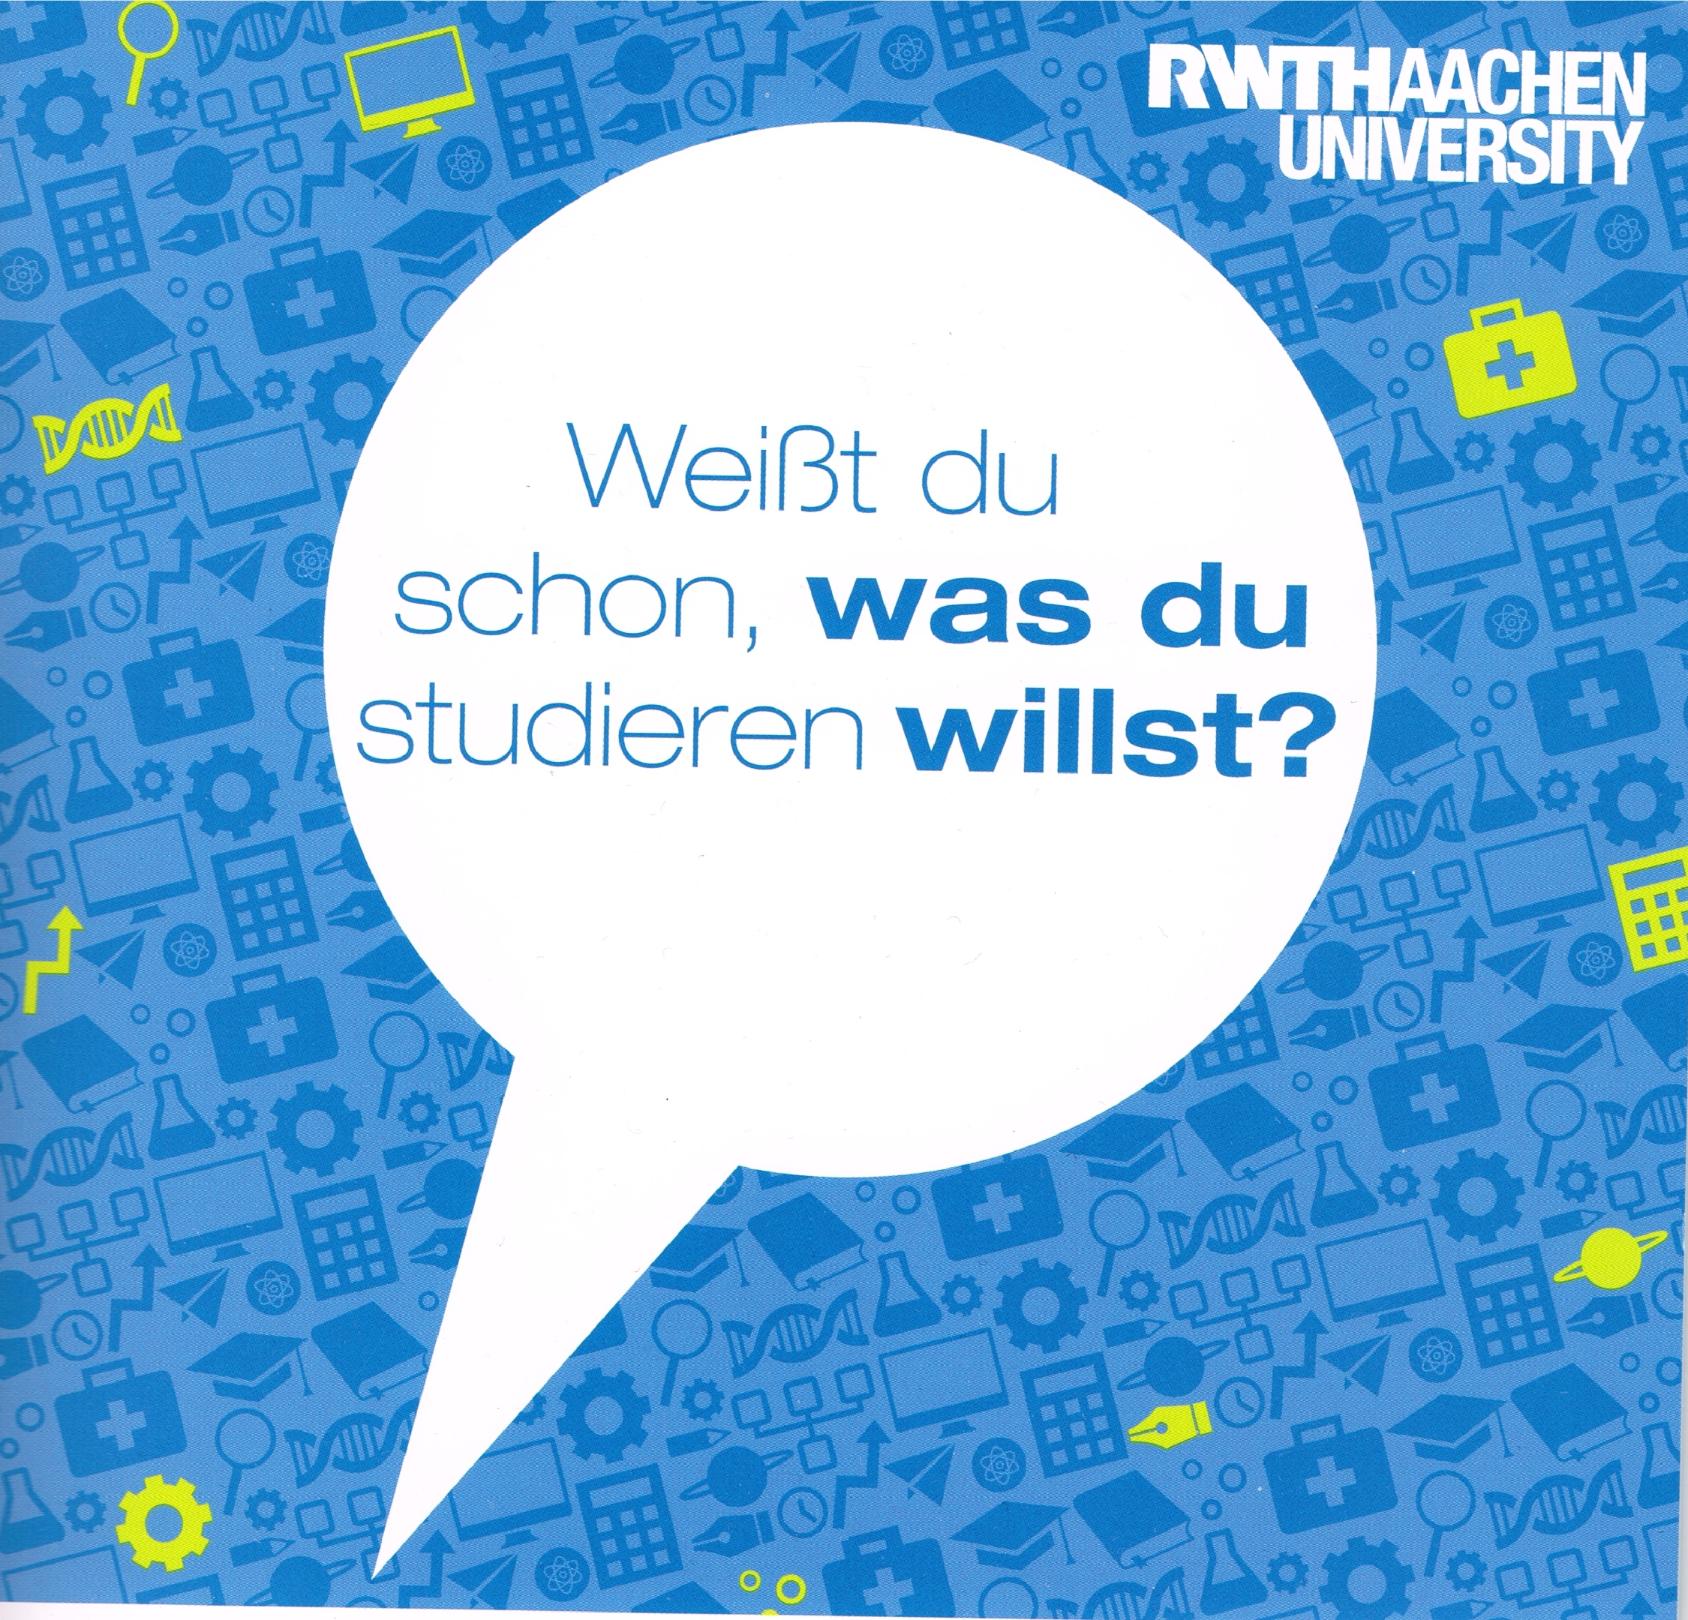 Weißt du schon, was du studieren willst? (c) RWTH Aachen